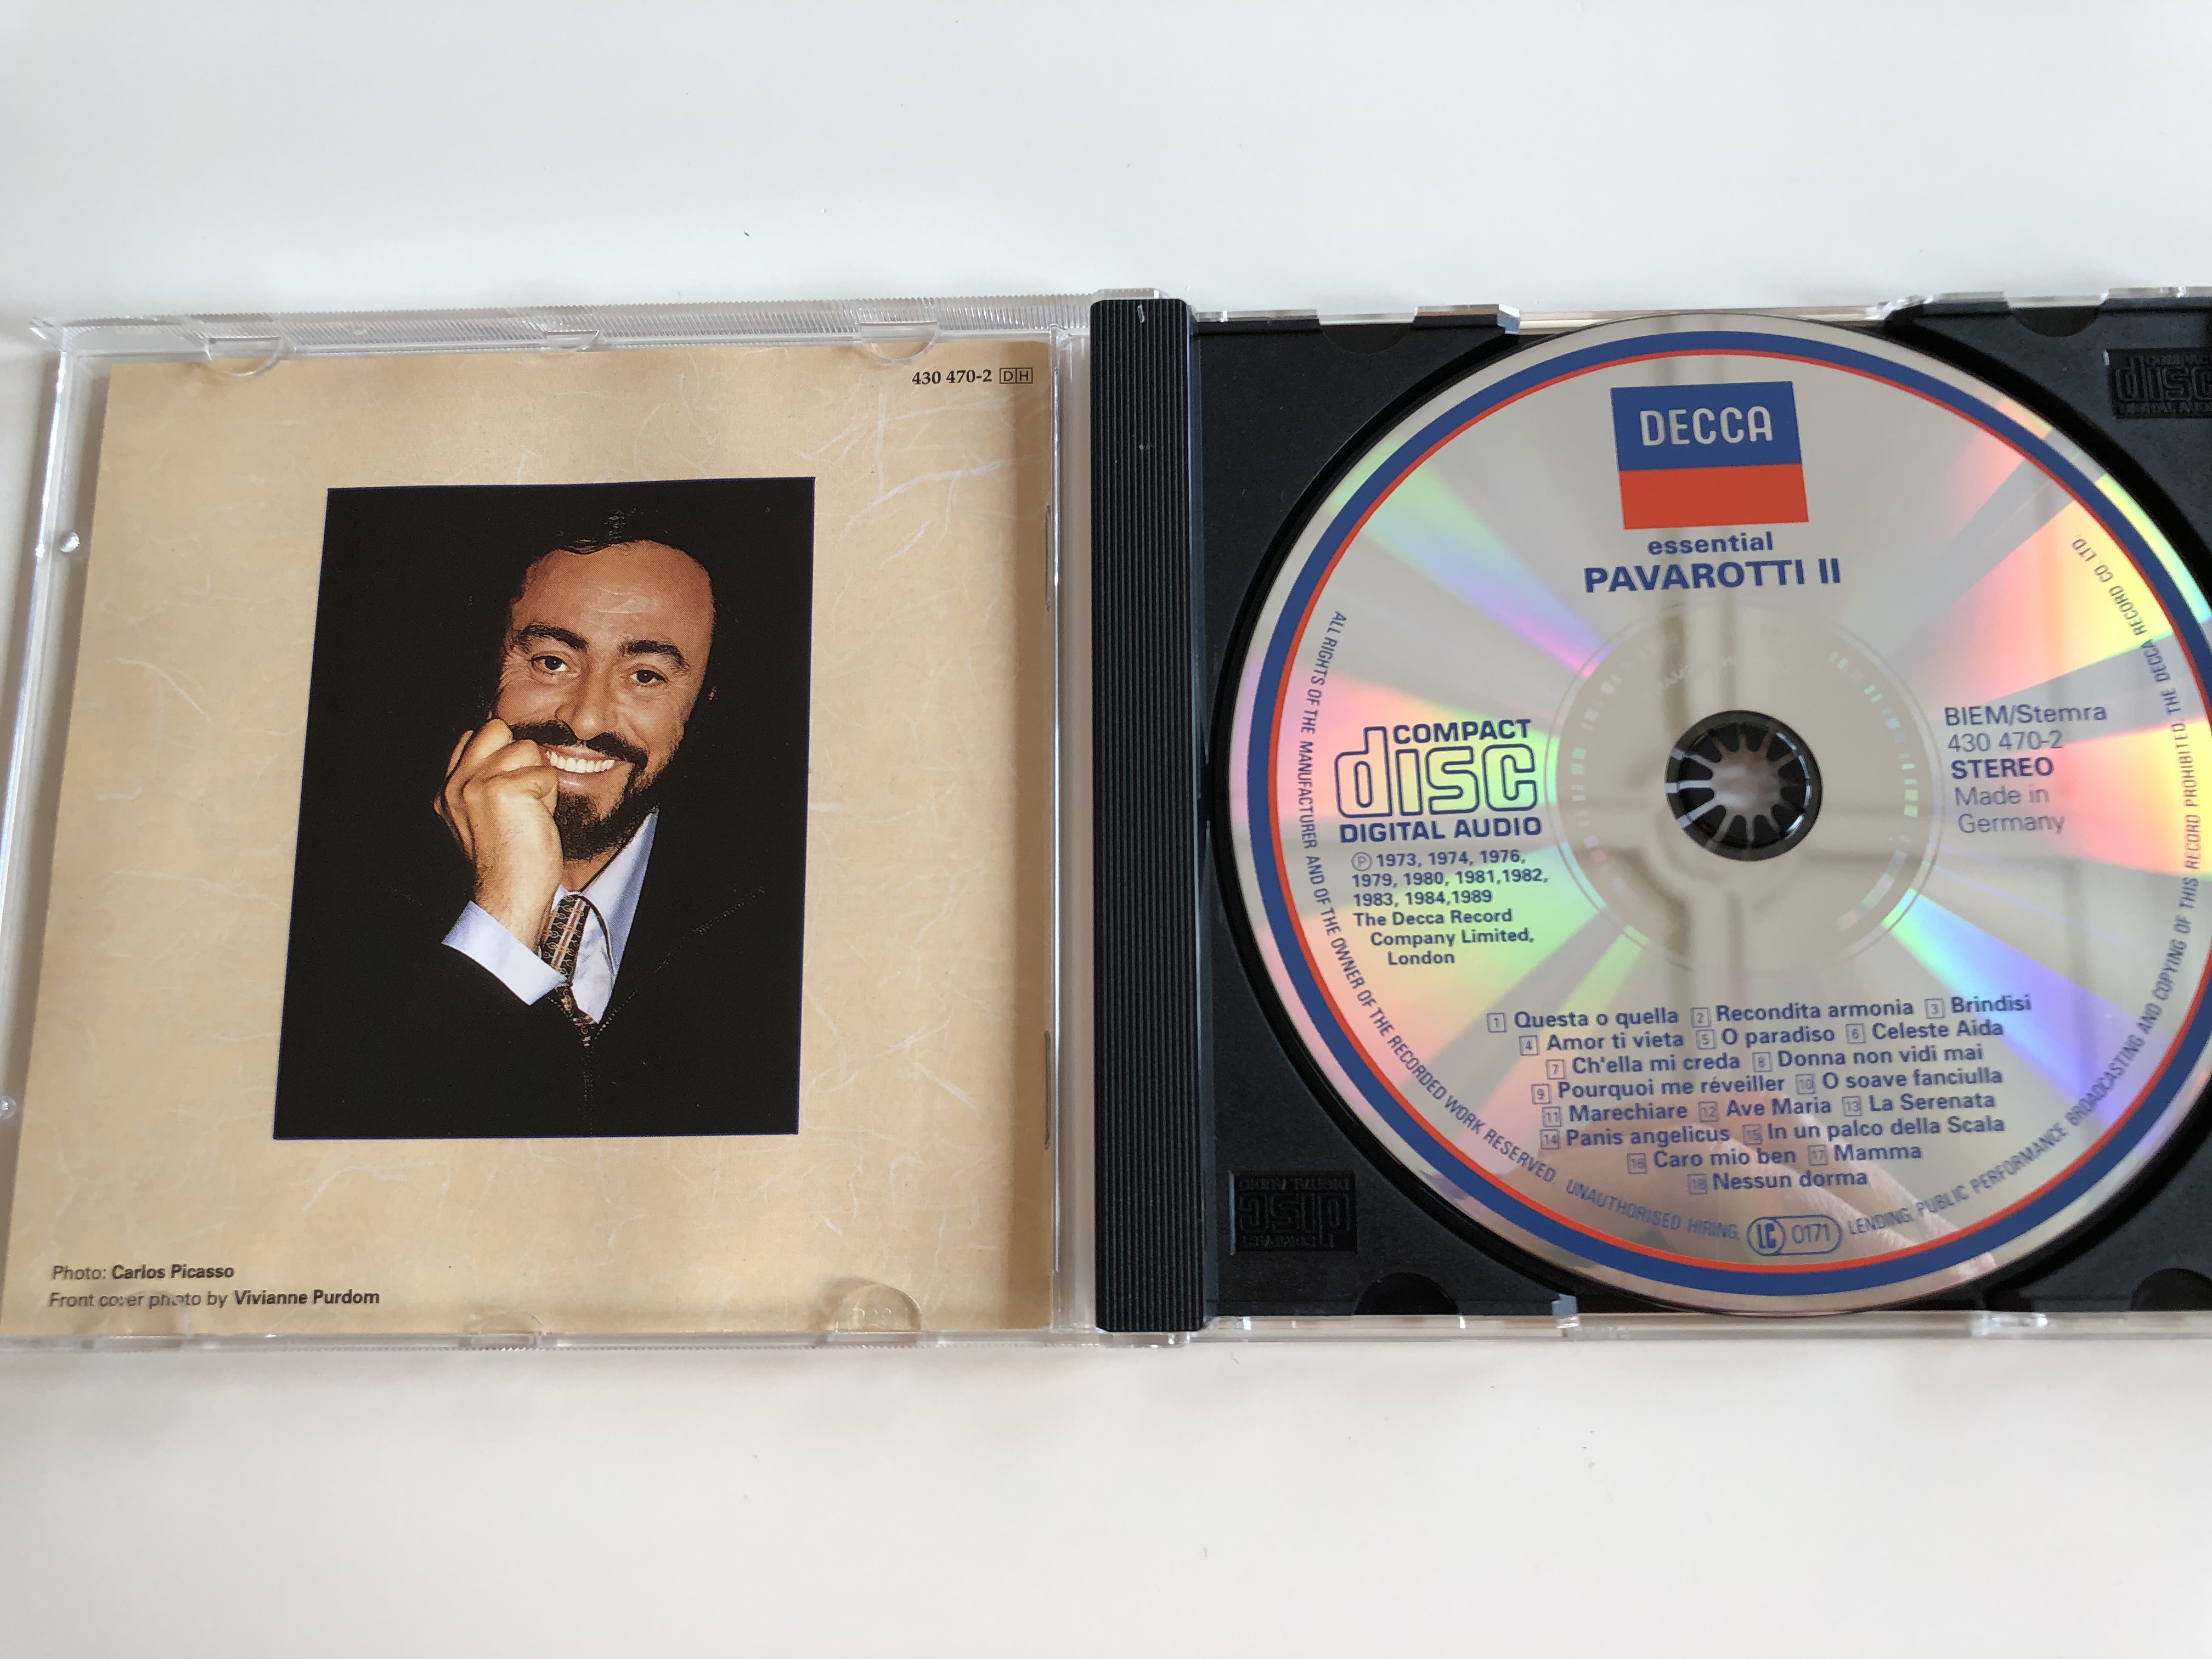 essential-pavarotti-iiimg-2614.jpg